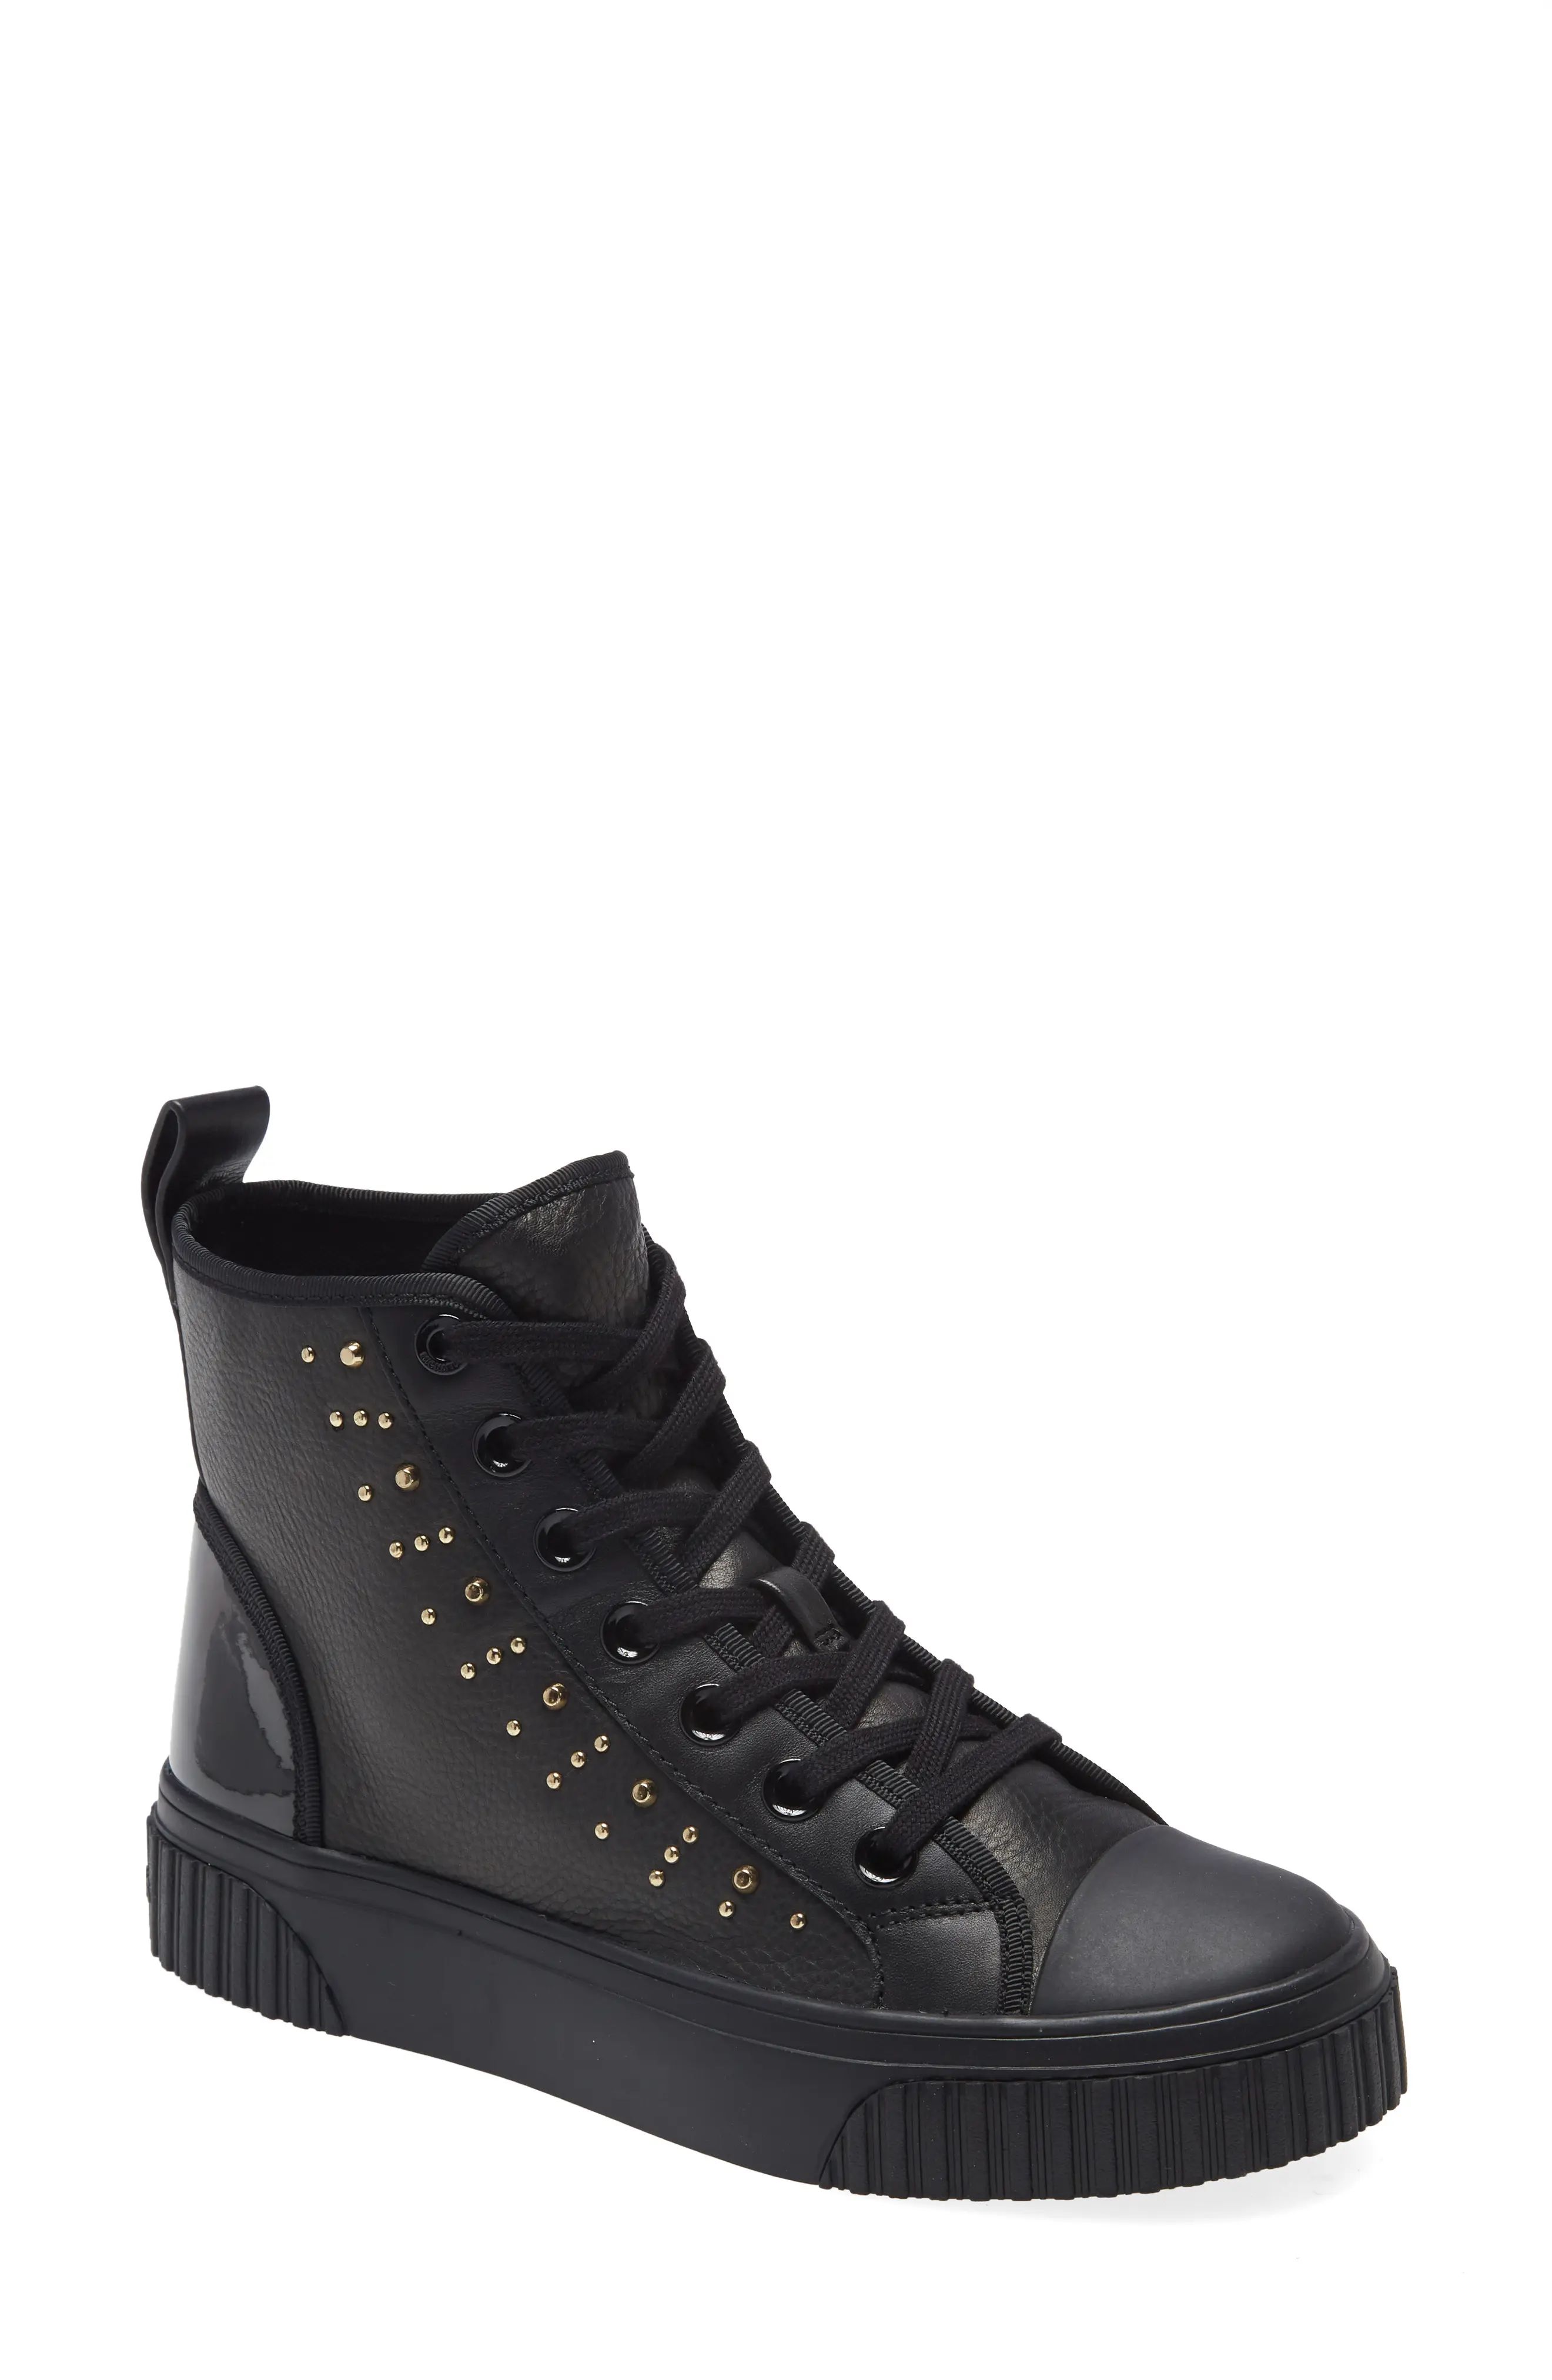 Women's Michael Michael Kors Gertie High Top Sneaker, Size 8.5 M - Black | Nordstrom